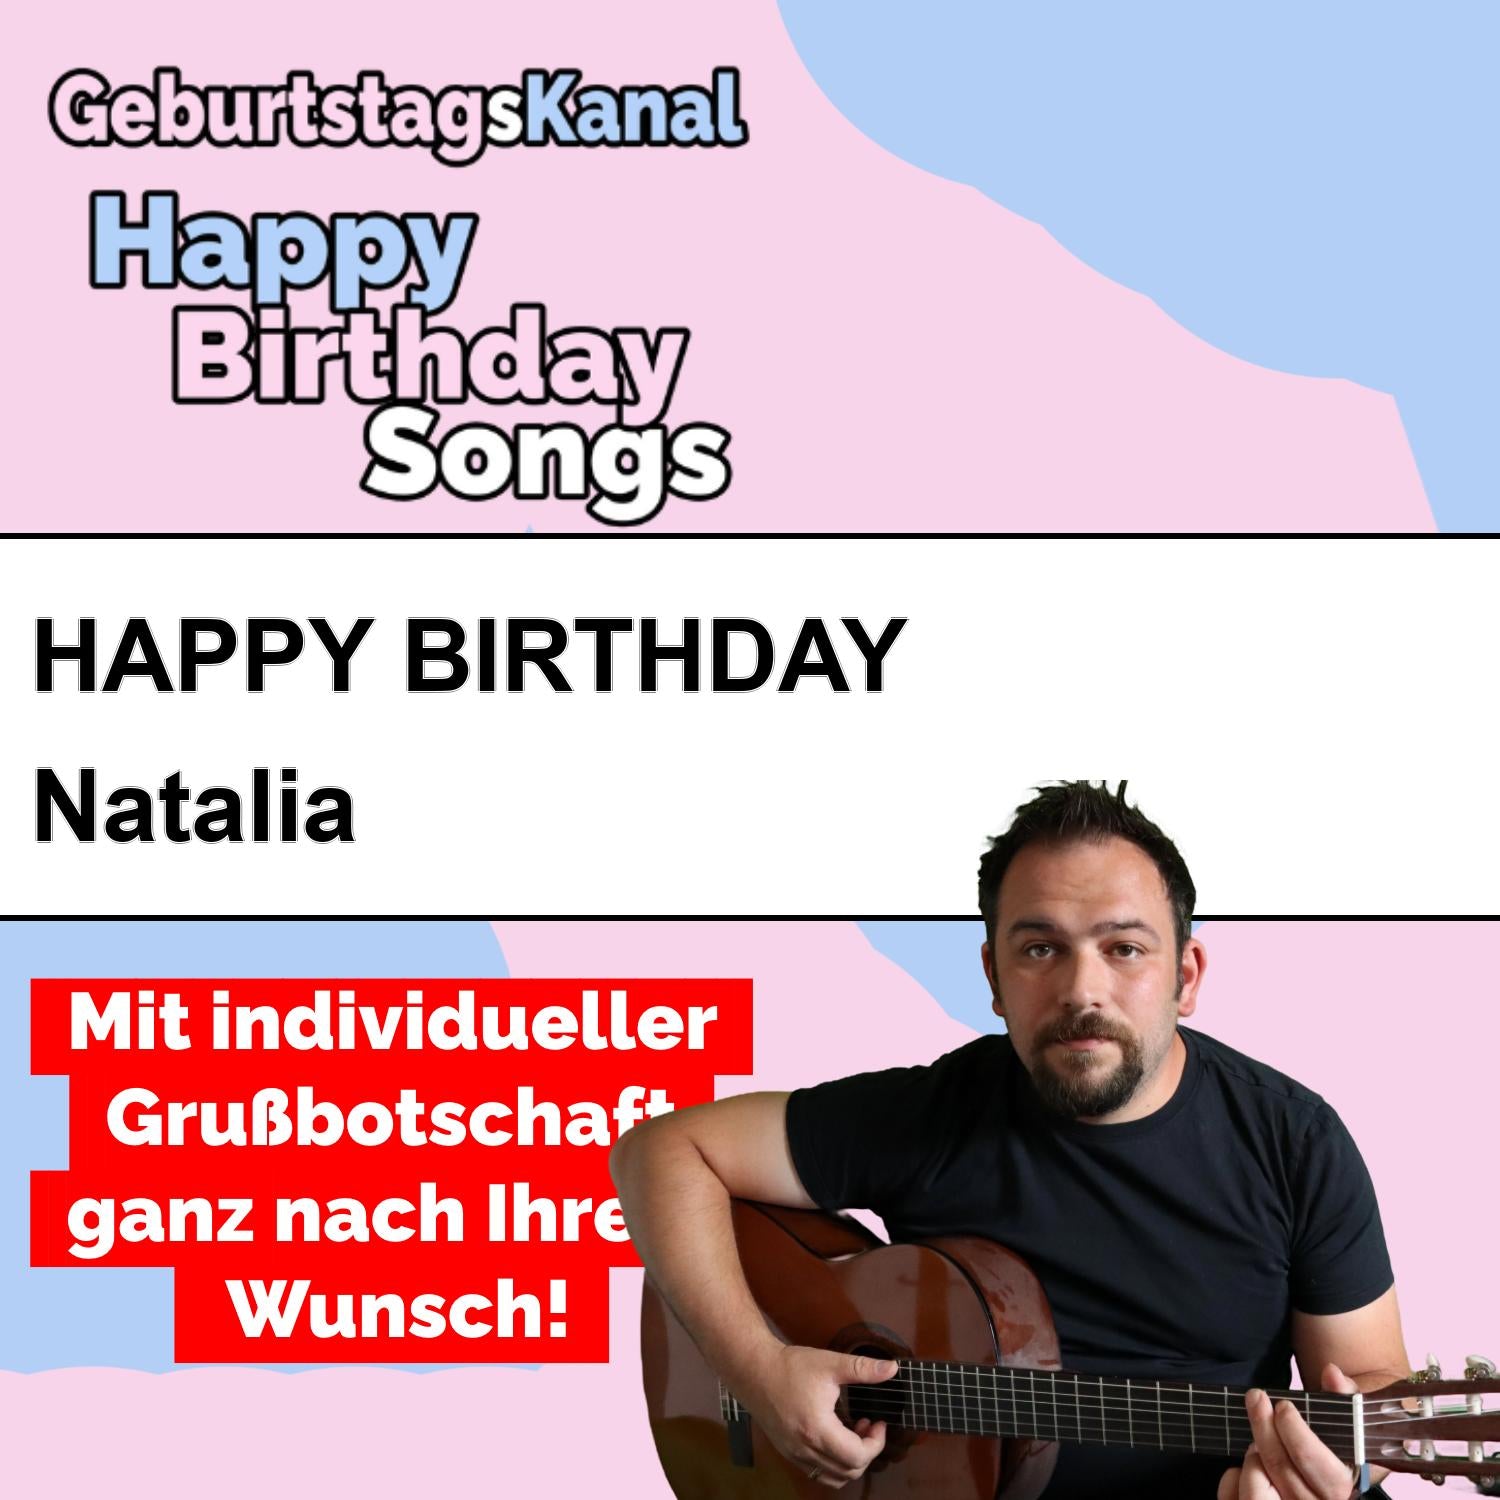 Produktbild Happy Birthday to you Natalia mit Wunschgrußbotschaft